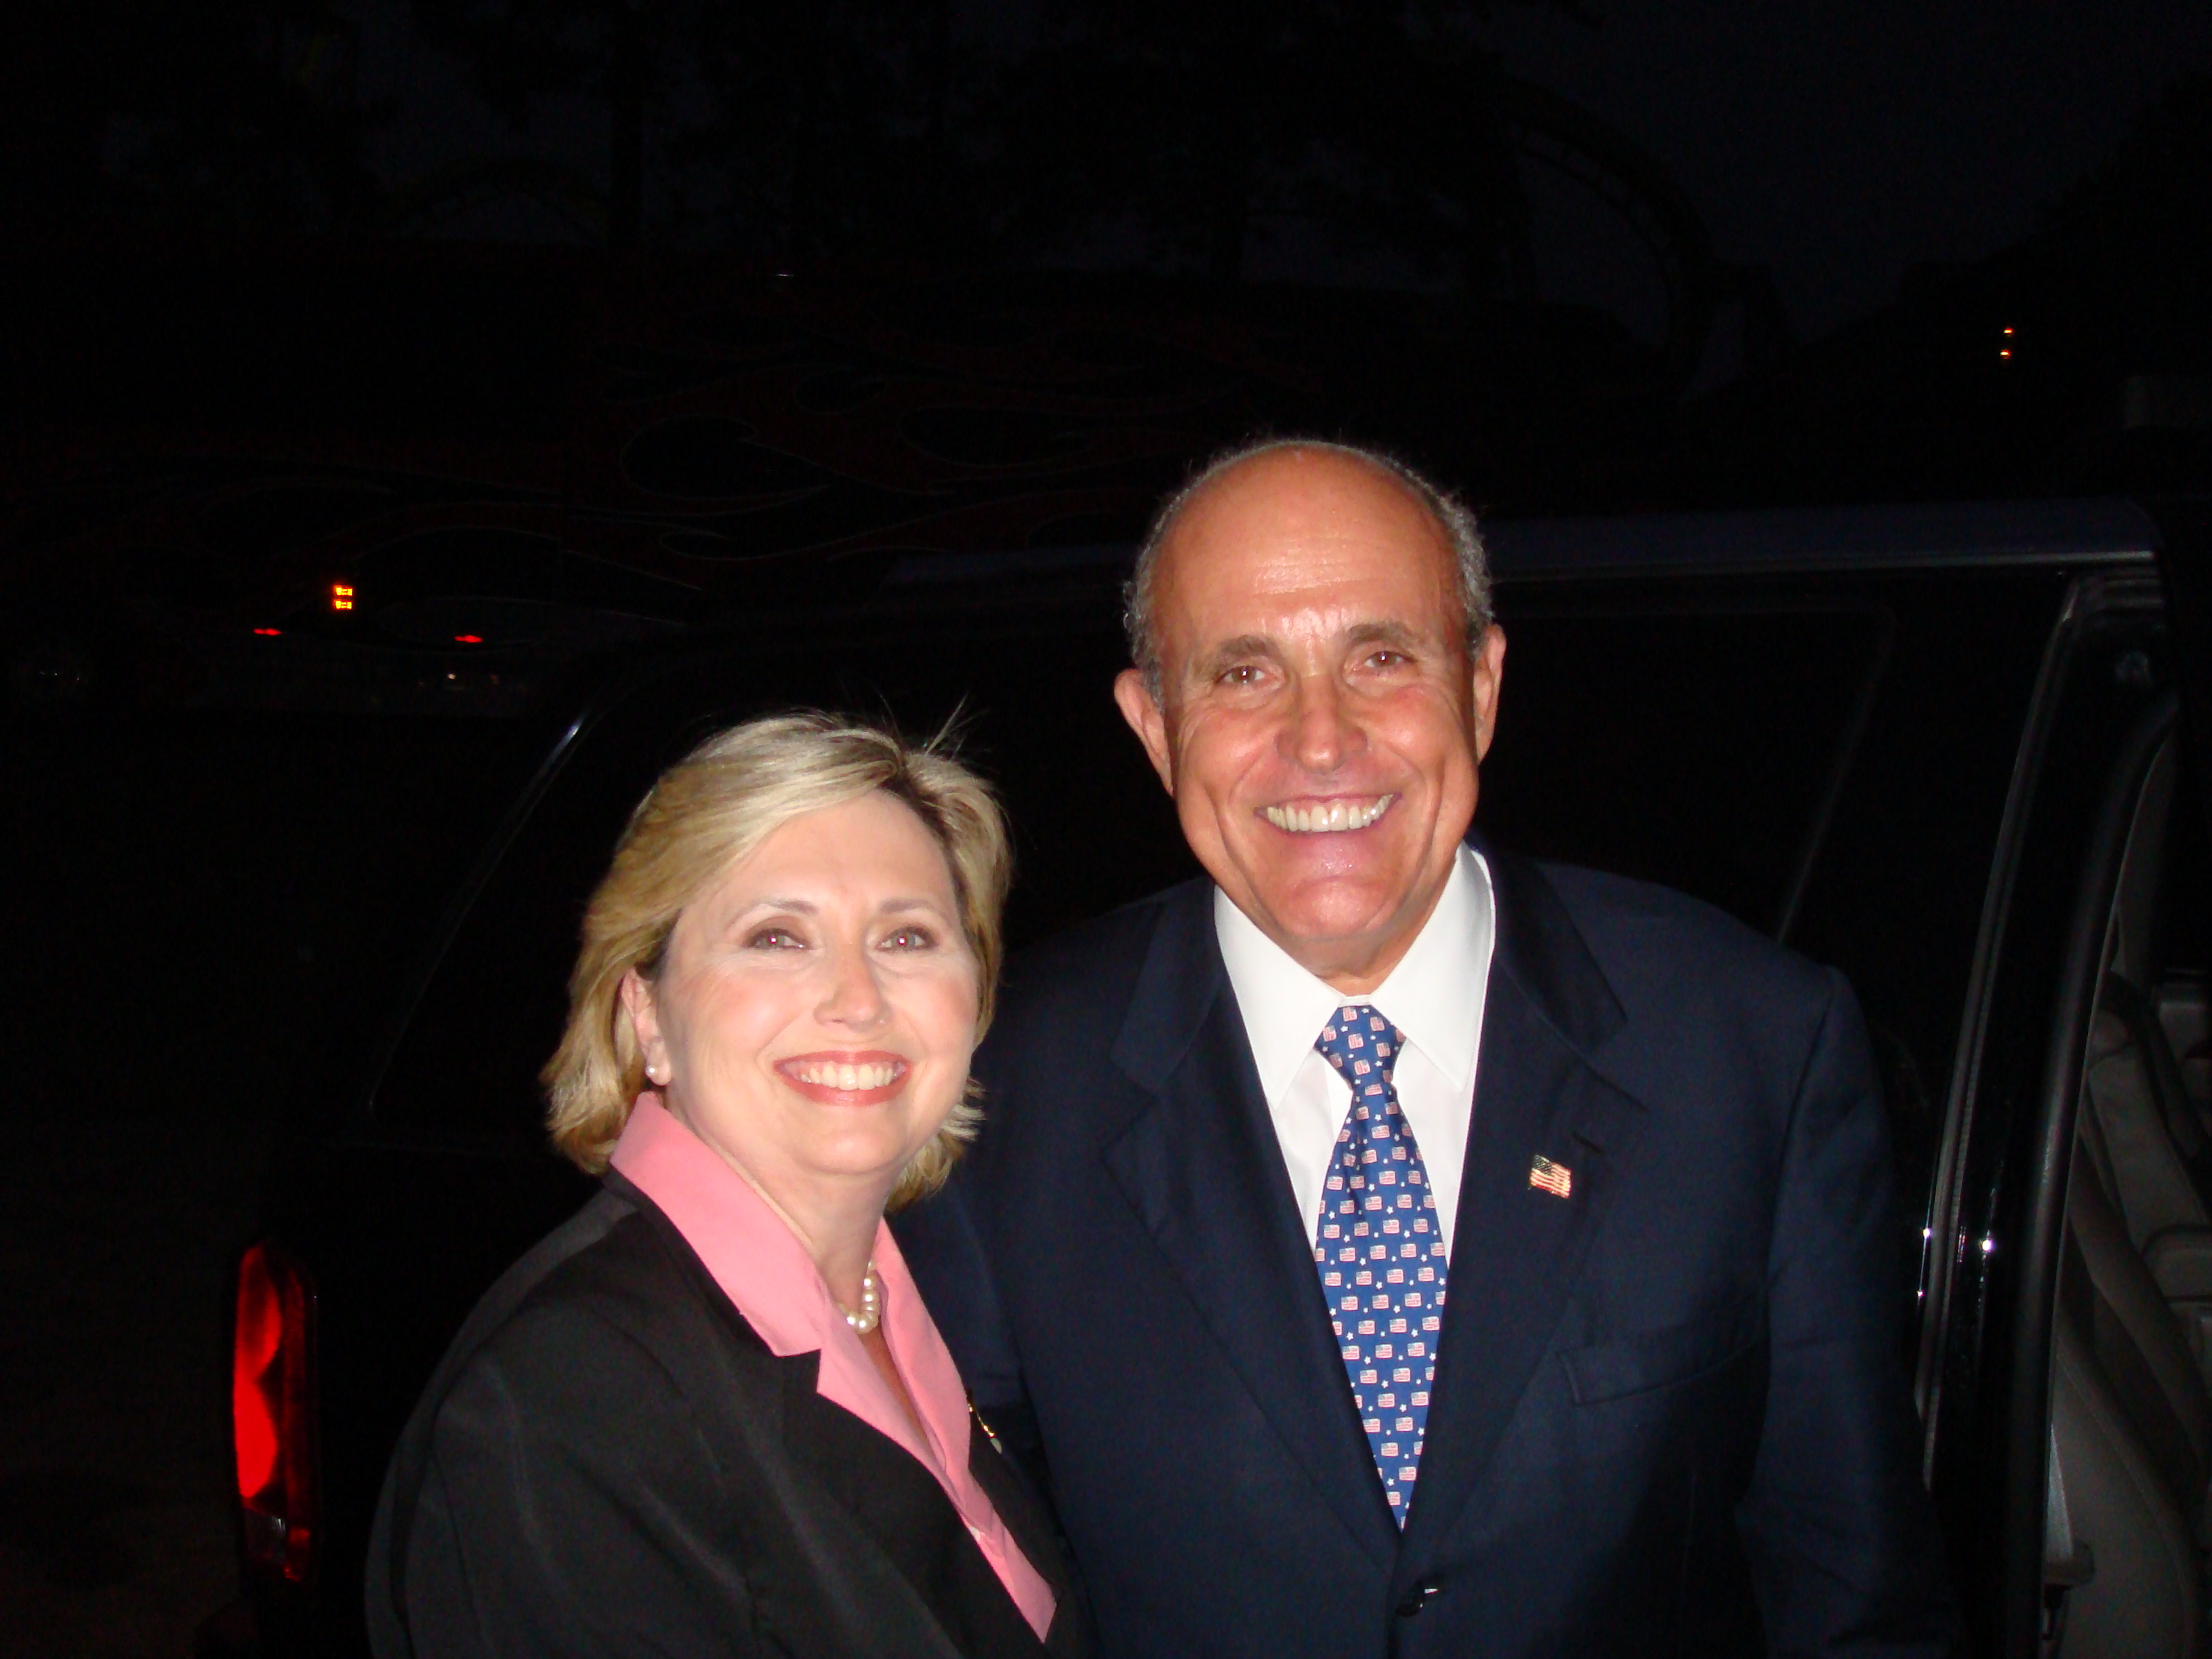 Teresa Barnwell with Former Mayor of New York City Rudy Giuliani